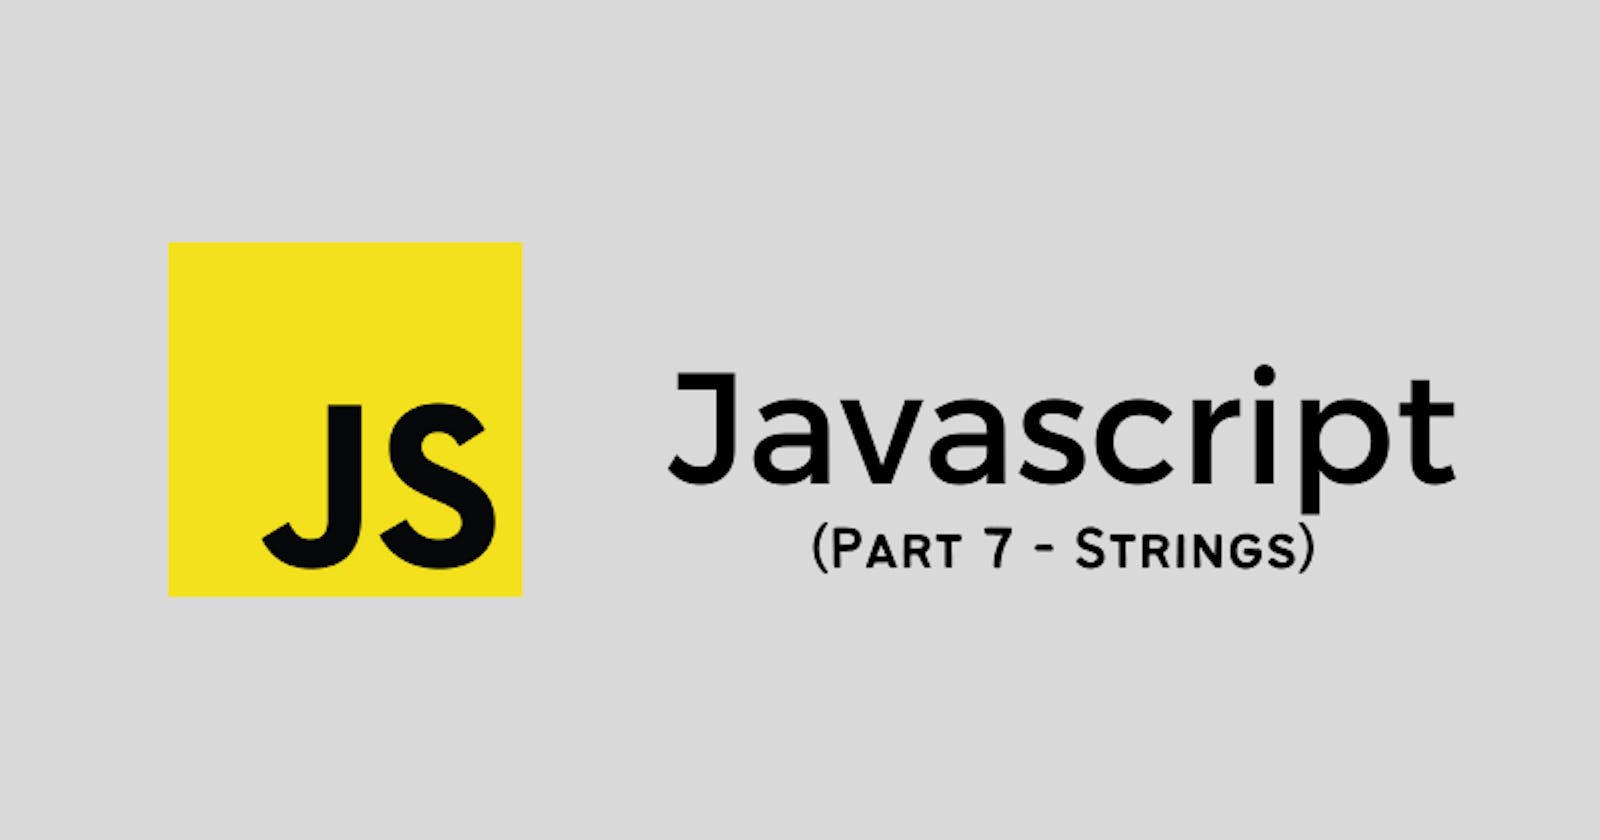 Strings in Javascript